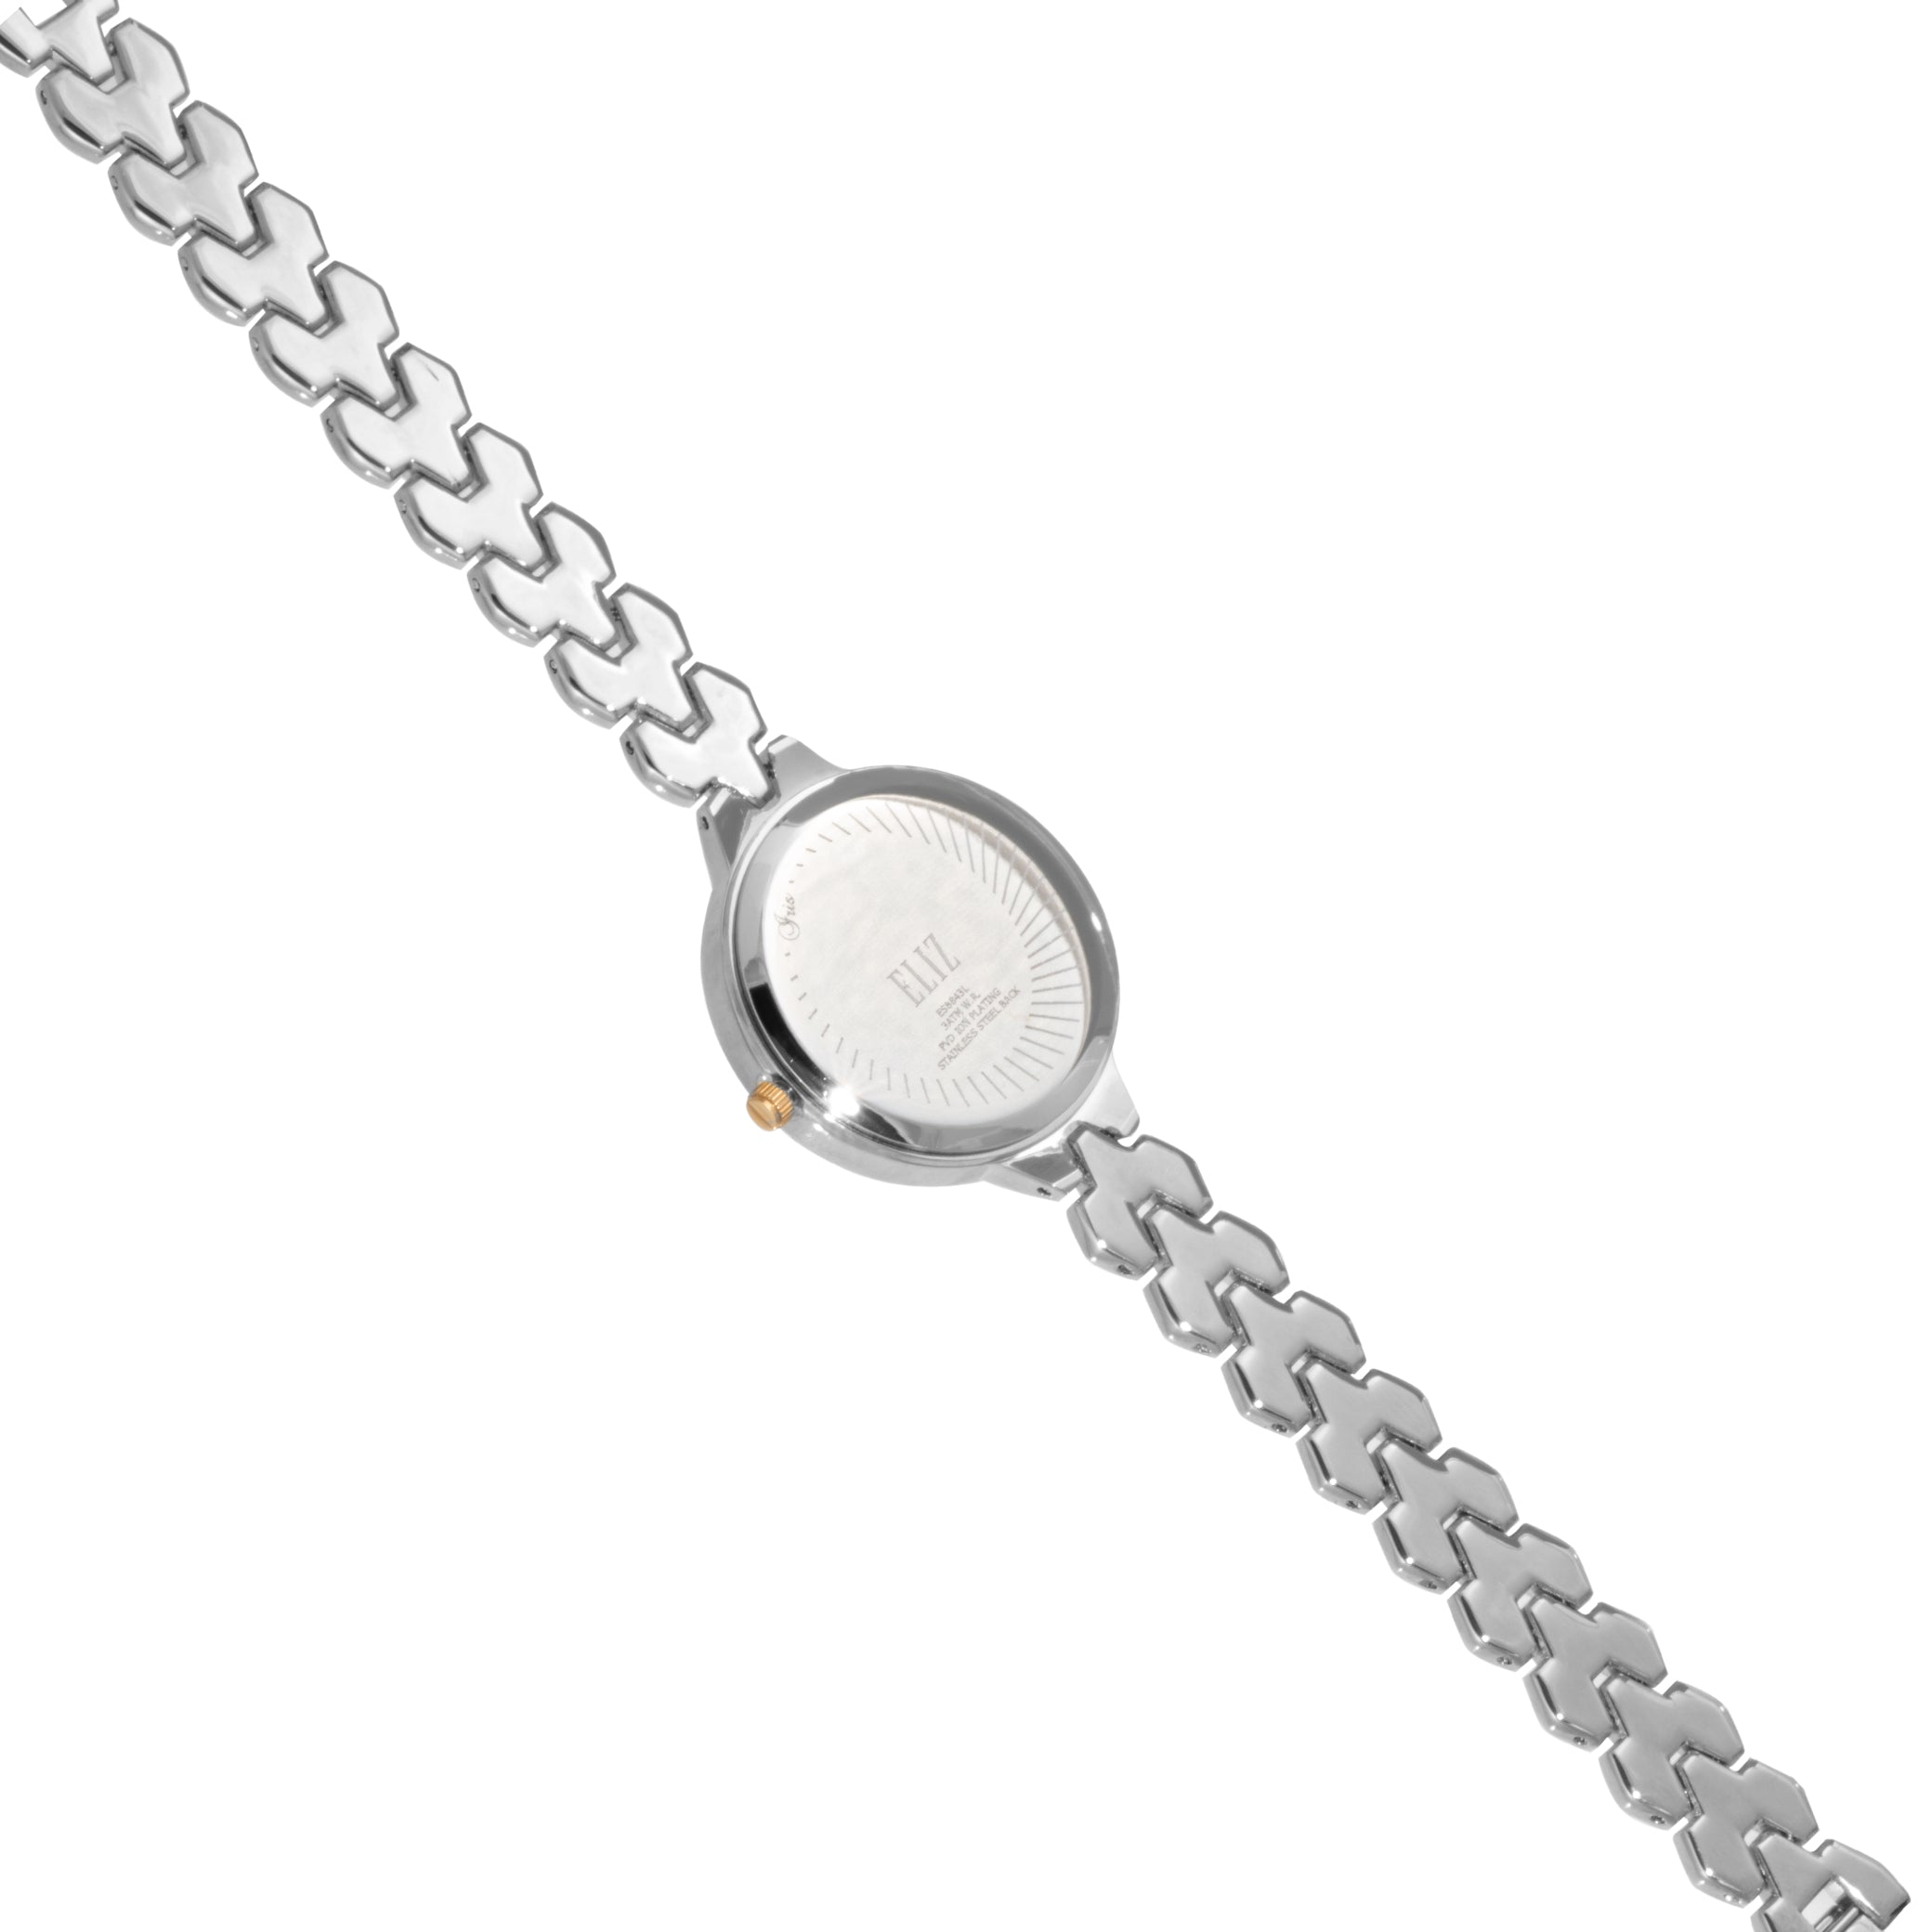 ELIZ ES8843L2UWU Metal Case and Bracelet 3-Hands Women's Watch